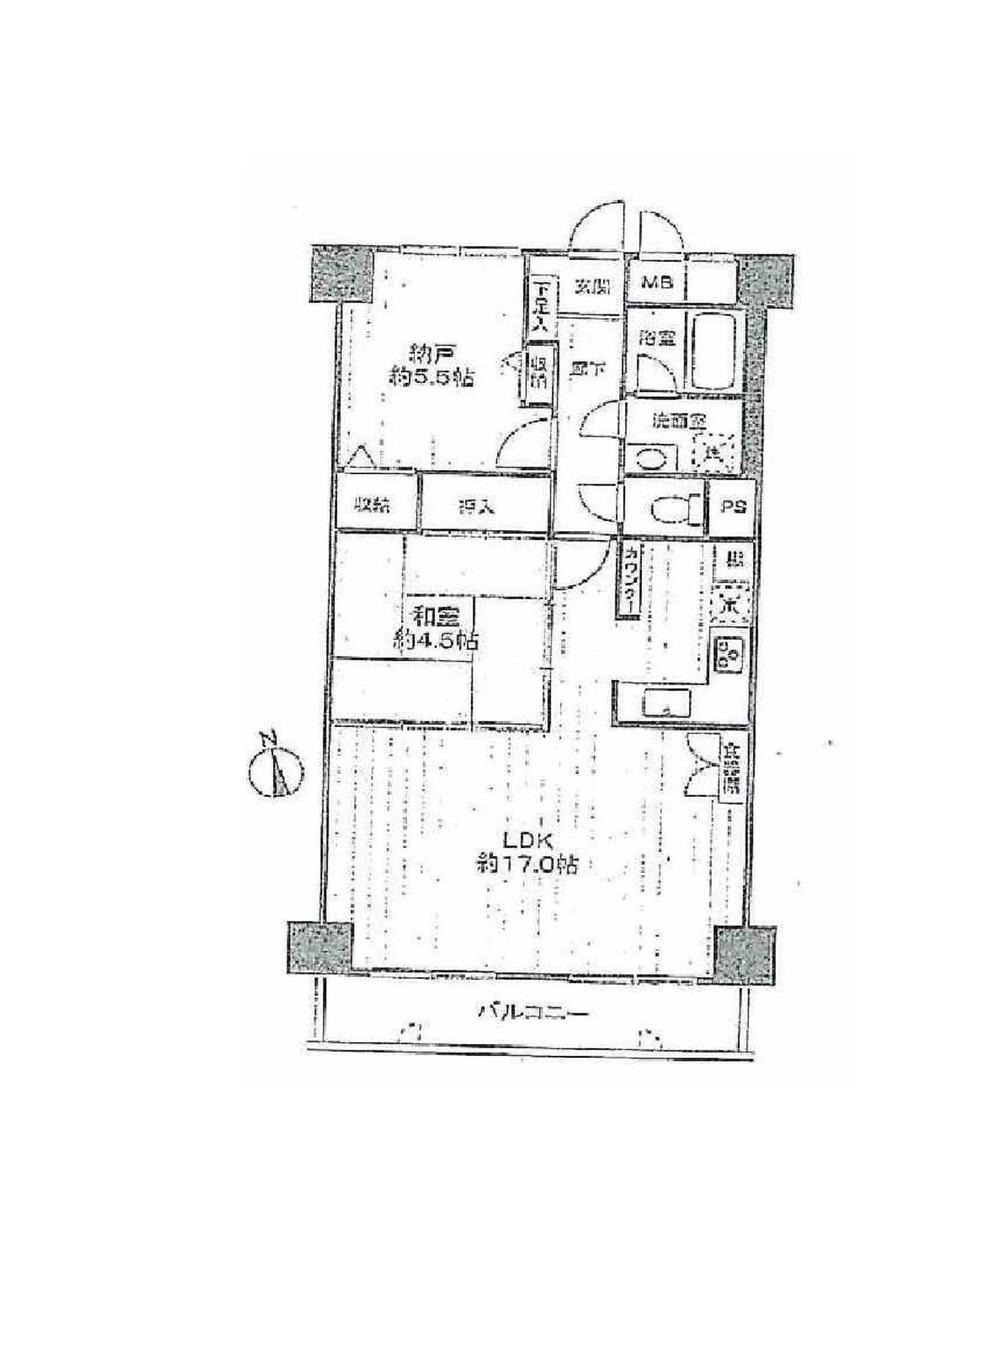 Floor plan. 1LDK + S (storeroom), Price 17.8 million yen, Footprint 64.9 sq m , Balcony area 7.08 sq m floor plan